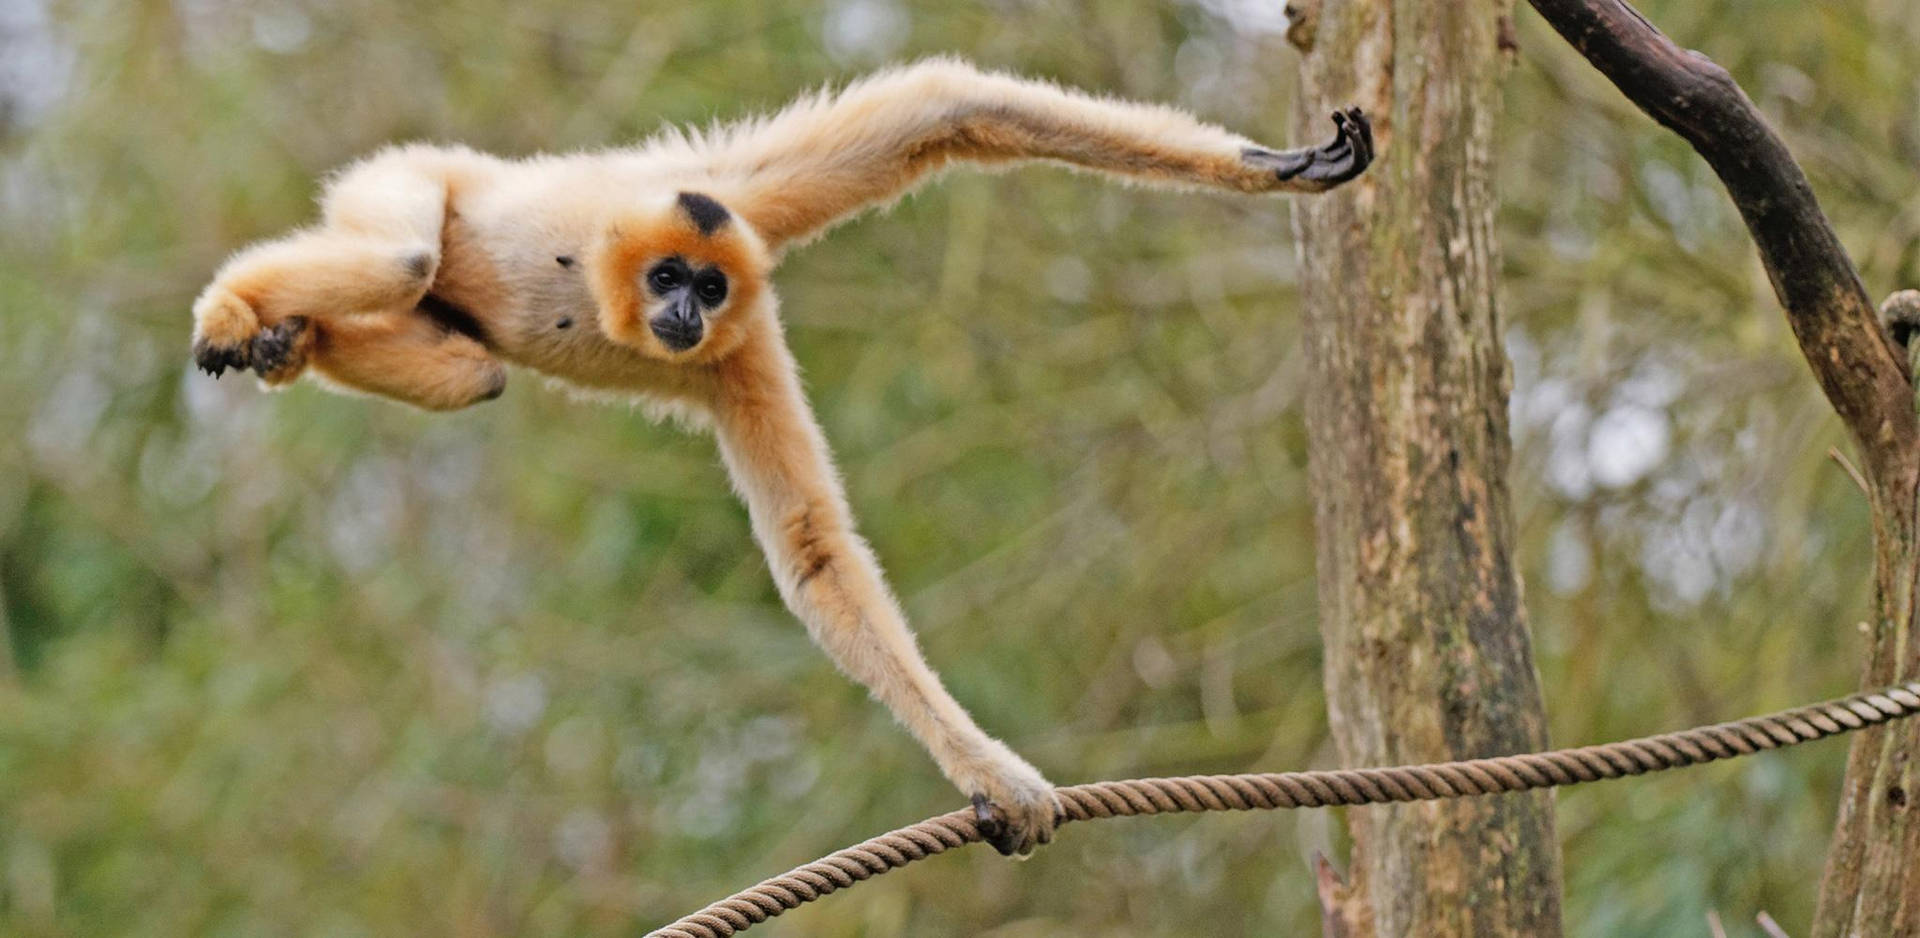 Gibbon Swinging On Rope